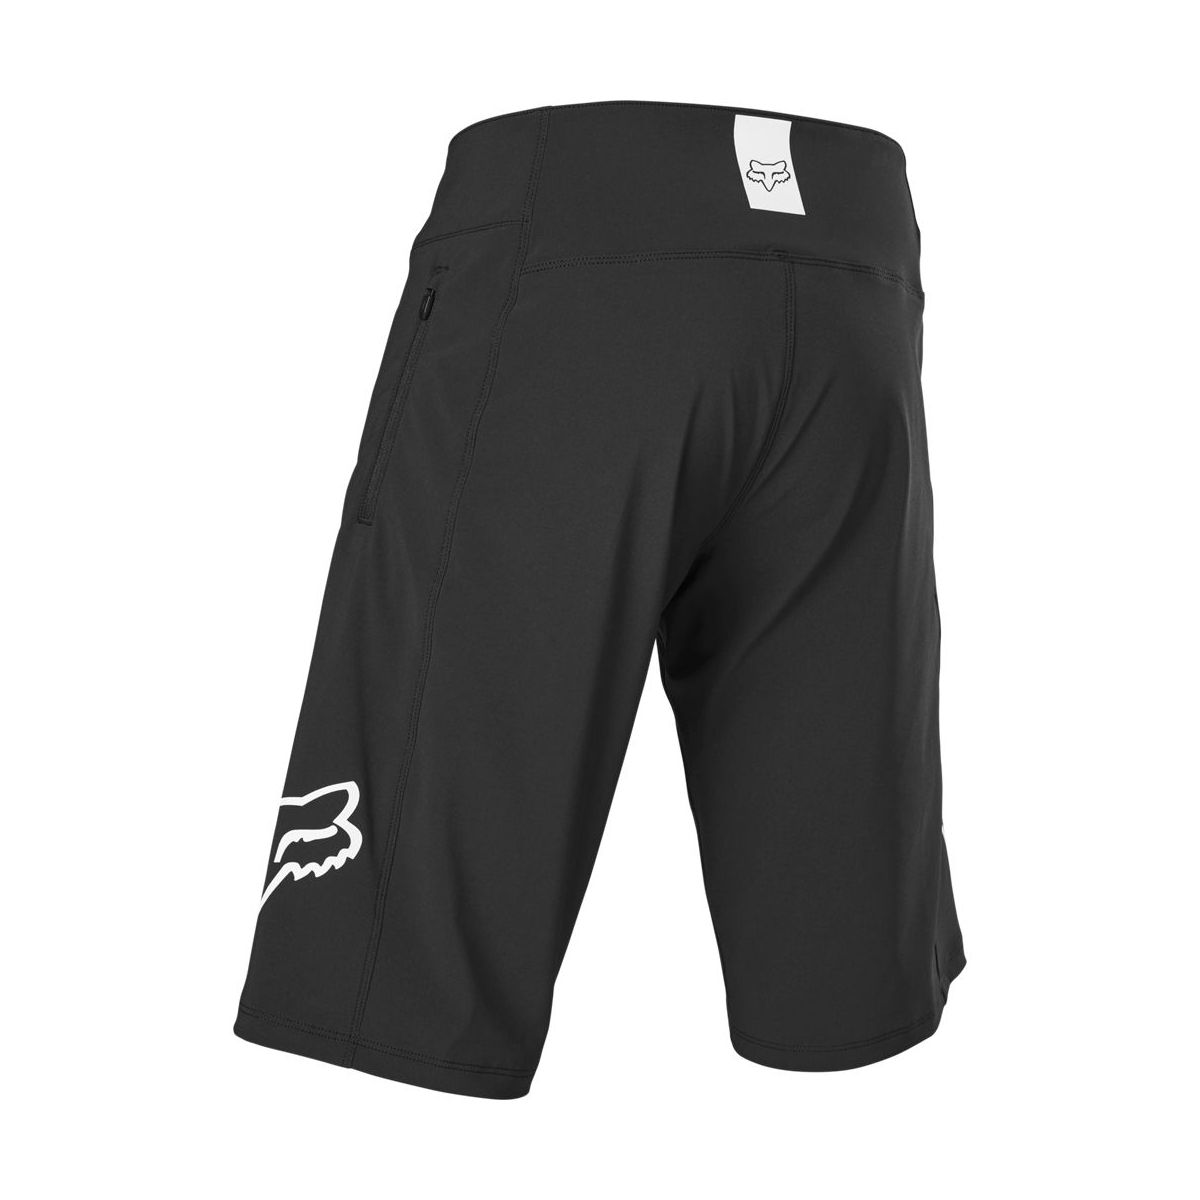 Pantalones cortos MTB Enduro Fox Defend con cremallera sin badana color negro | FOX RACING ESPAÑA | The Bike Village